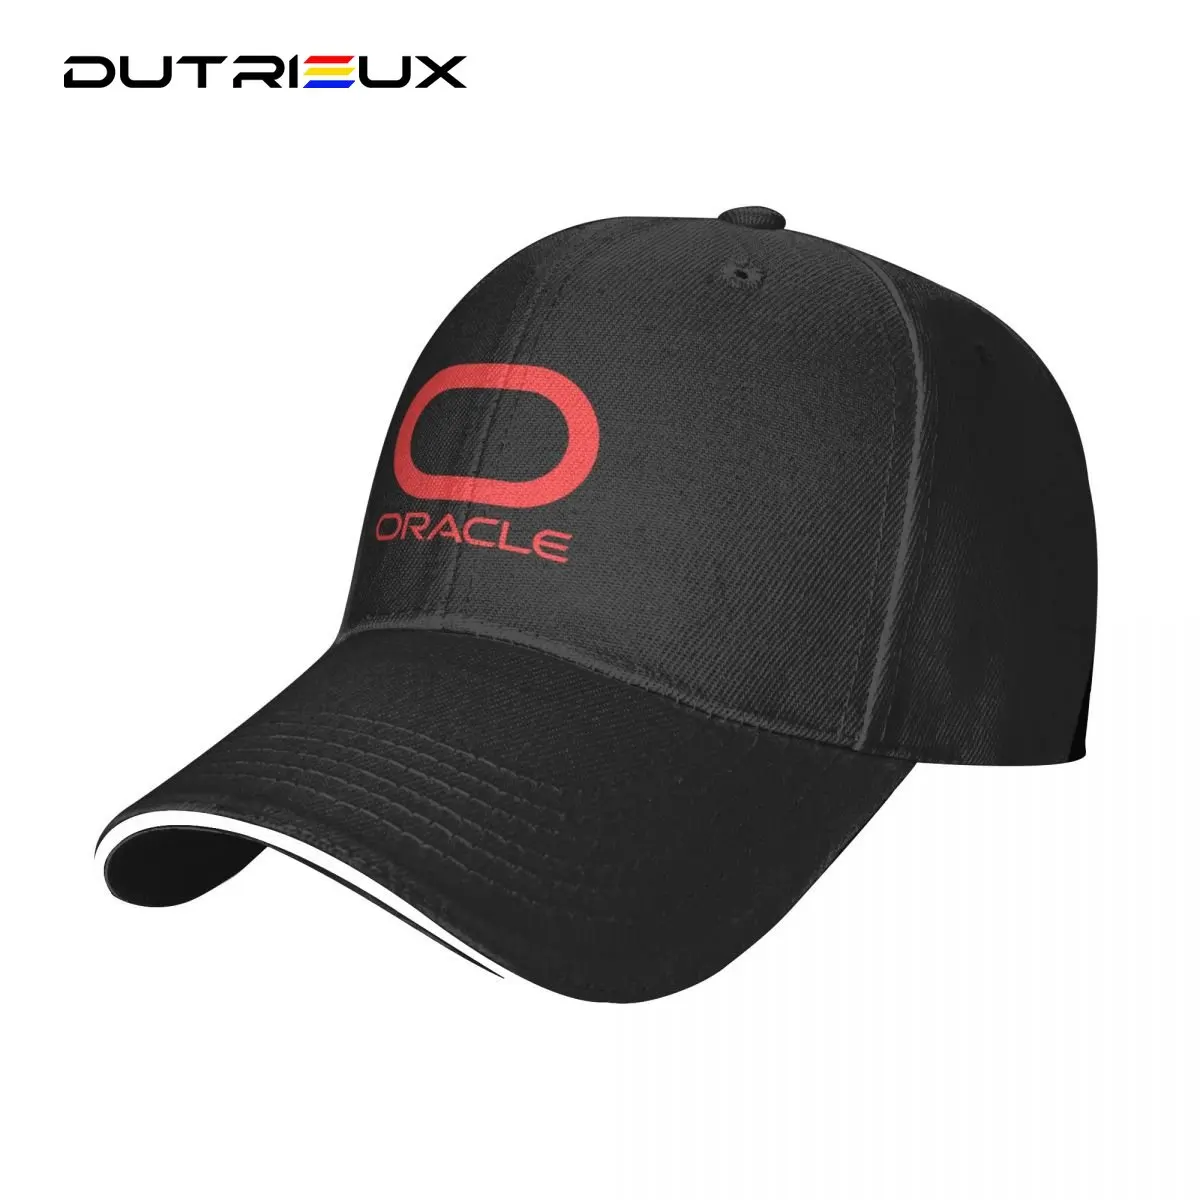 כובע בייסבול עבור גברים, נשים, אדום גדול Oracle לוגו כובע כובע מותג יוקרה חורף כובע לנשים גברים - 0